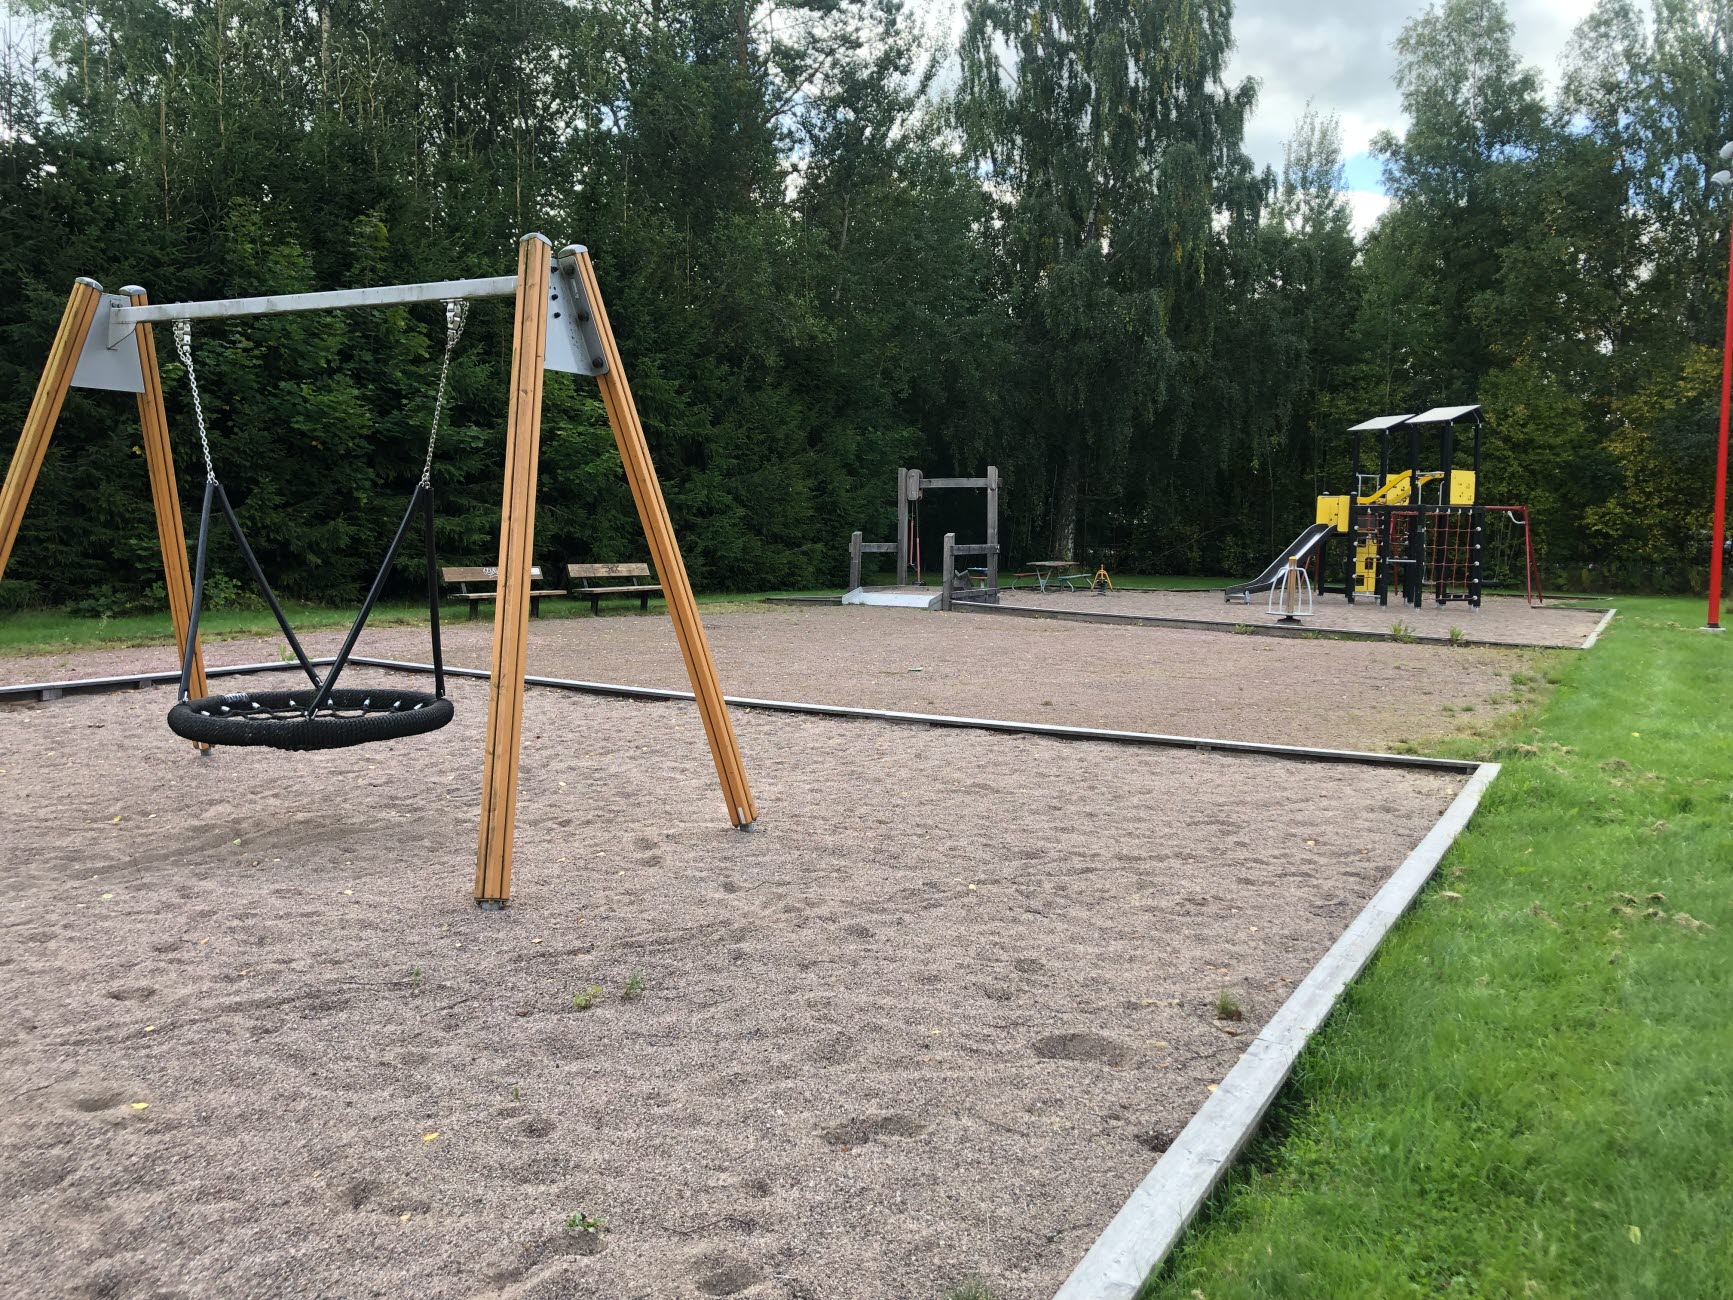 I Lindfors lekplats finns bland annat lekredskap såsom karusell och kompisgunga, pulkabacke, boulebanor och en öppen gräsbevuxen aktivitetsyta vilka sammantaget bildar en mångfunktionell mötesplats för både äldre och yngre.